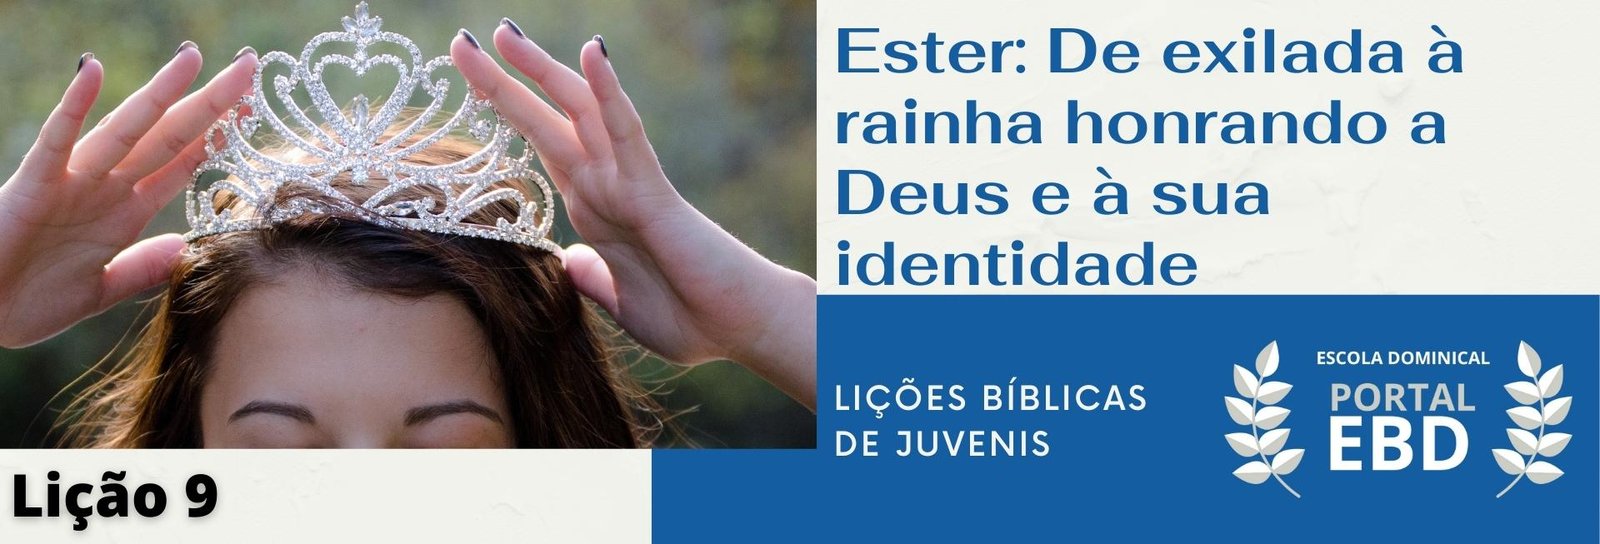 Lição 9 - Ester: de exilada à rainha, honrando a Deus e à sua identidade I